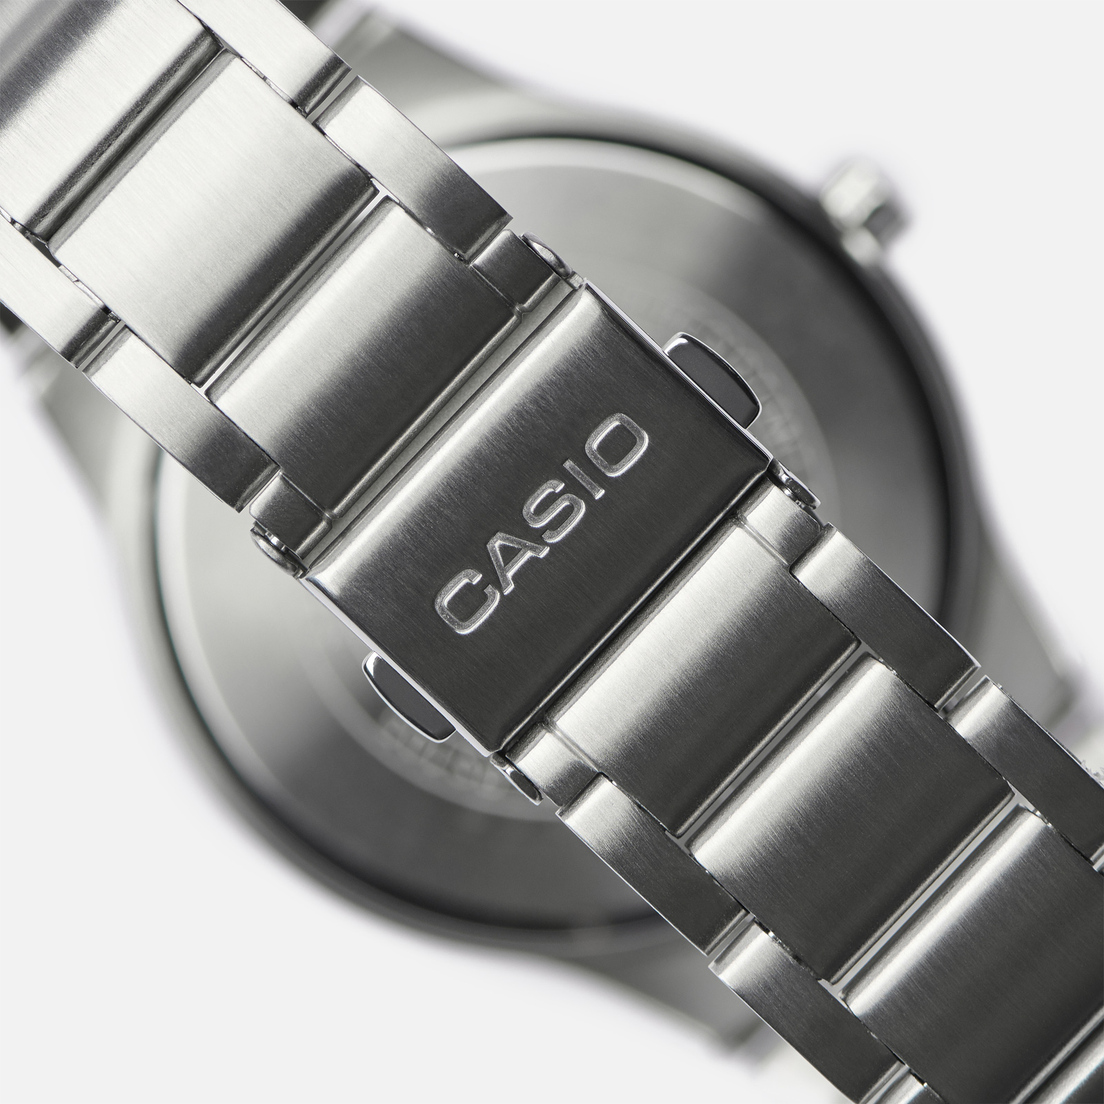 CASIO Наручные часы Collection MTP-RS105D-7B